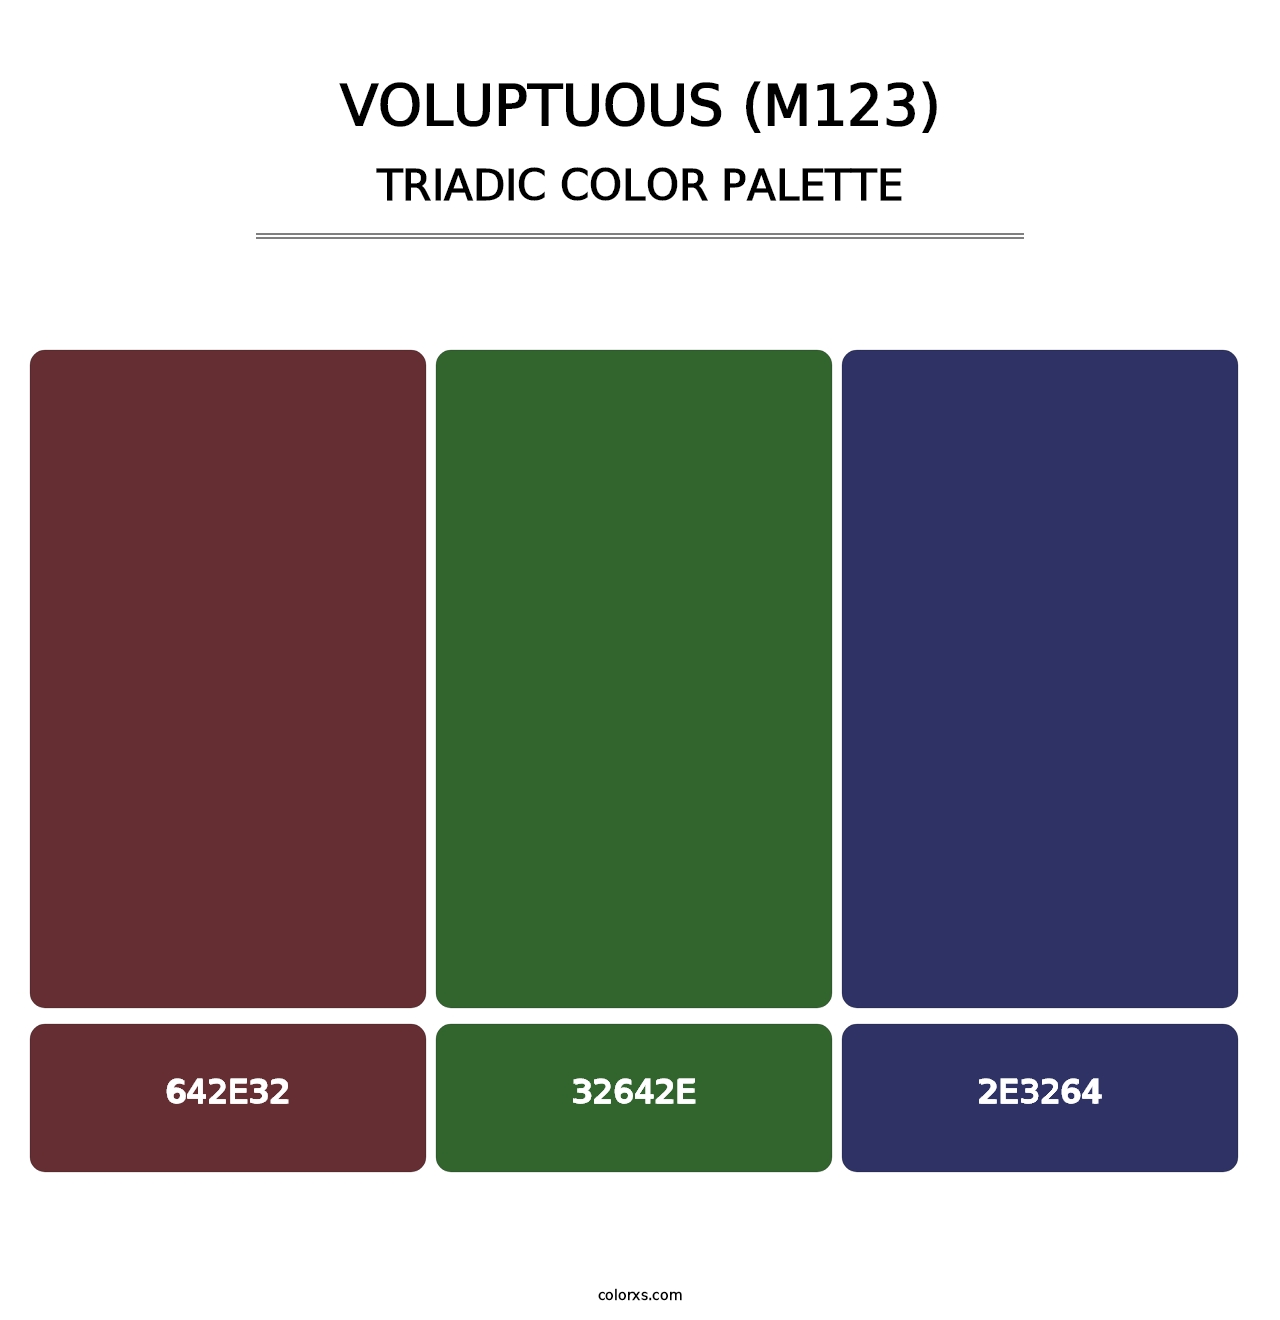 Voluptuous (M123) - Triadic Color Palette